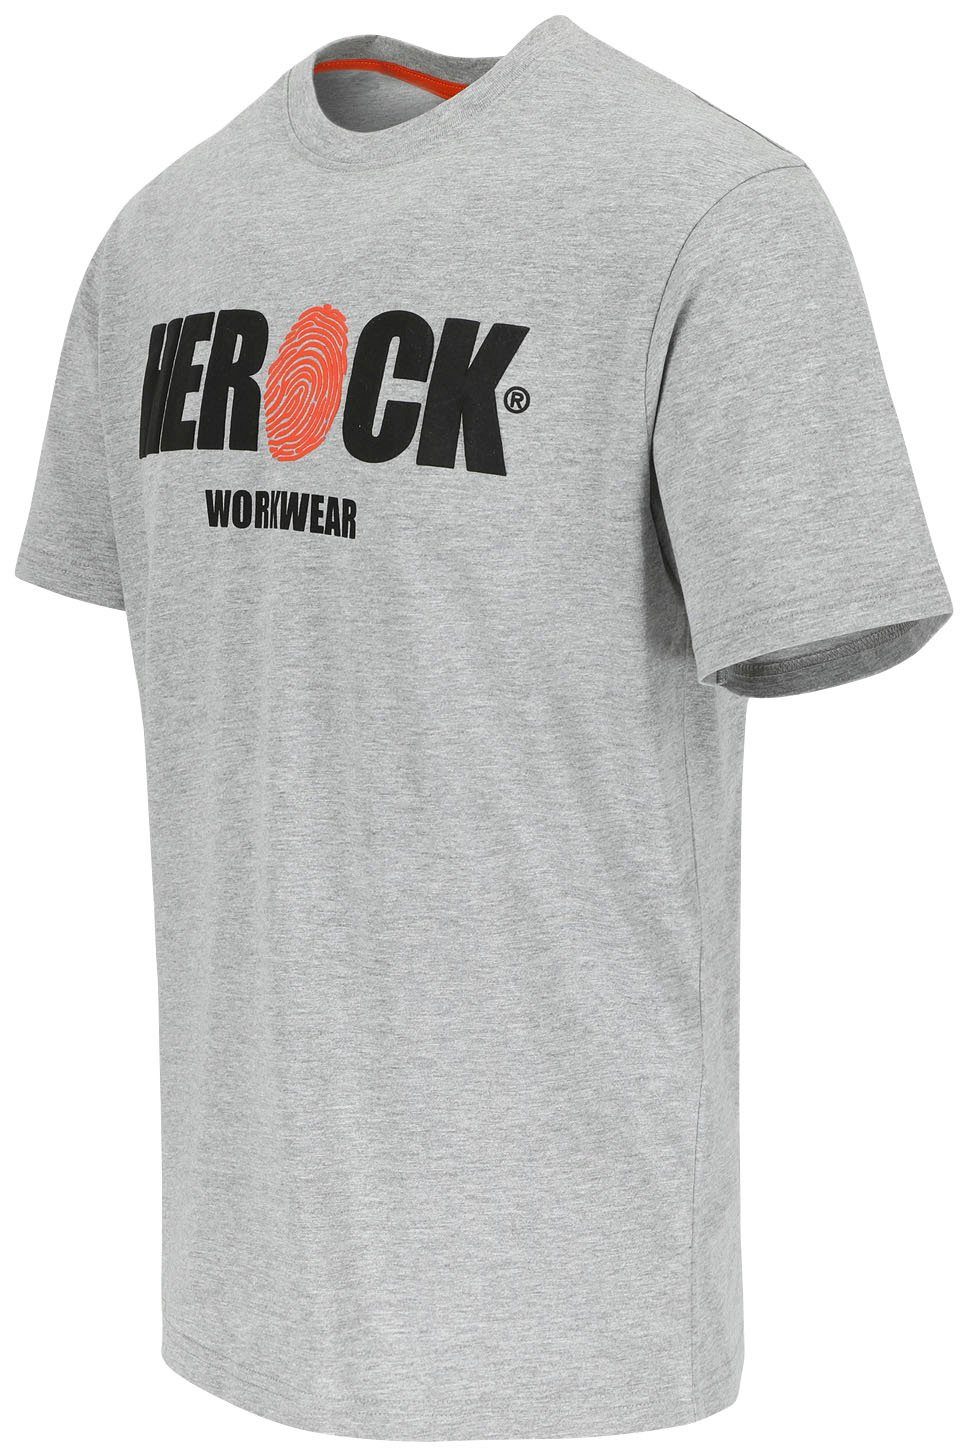 Tragegefühl Rundhals, grau Herock mit T-Shirt ENI Herock®-Aufdruck, angenehmes Baumwolle,